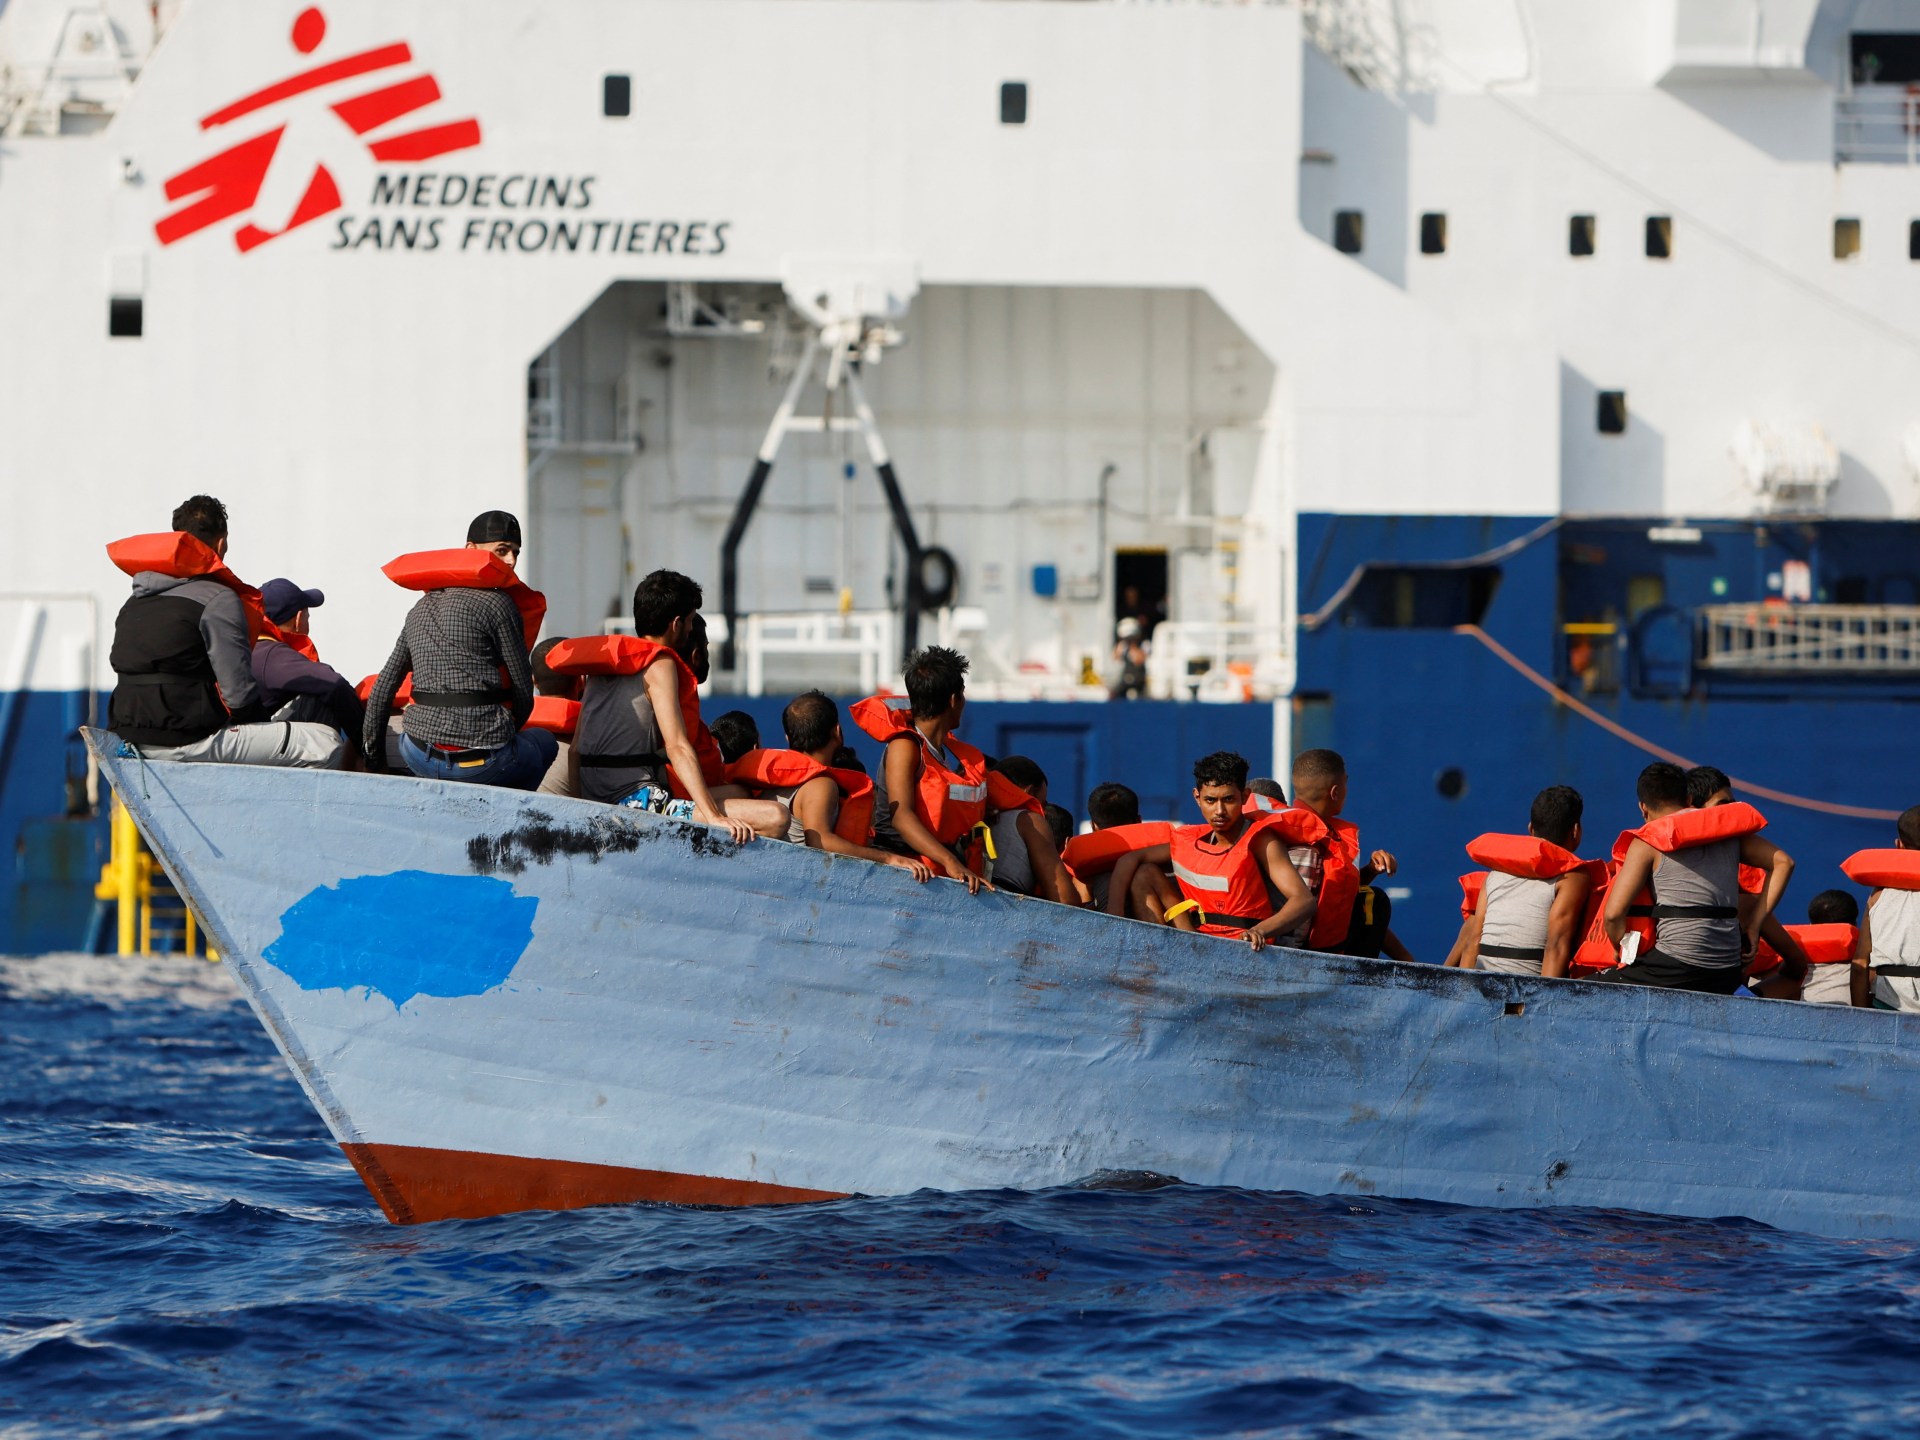 Decine di richiedenti asilo annegano dopo l’affondamento di una nave al largo della Libia: Organizzazione internazionale per le migrazioni |  Notizie sull’immigrazione